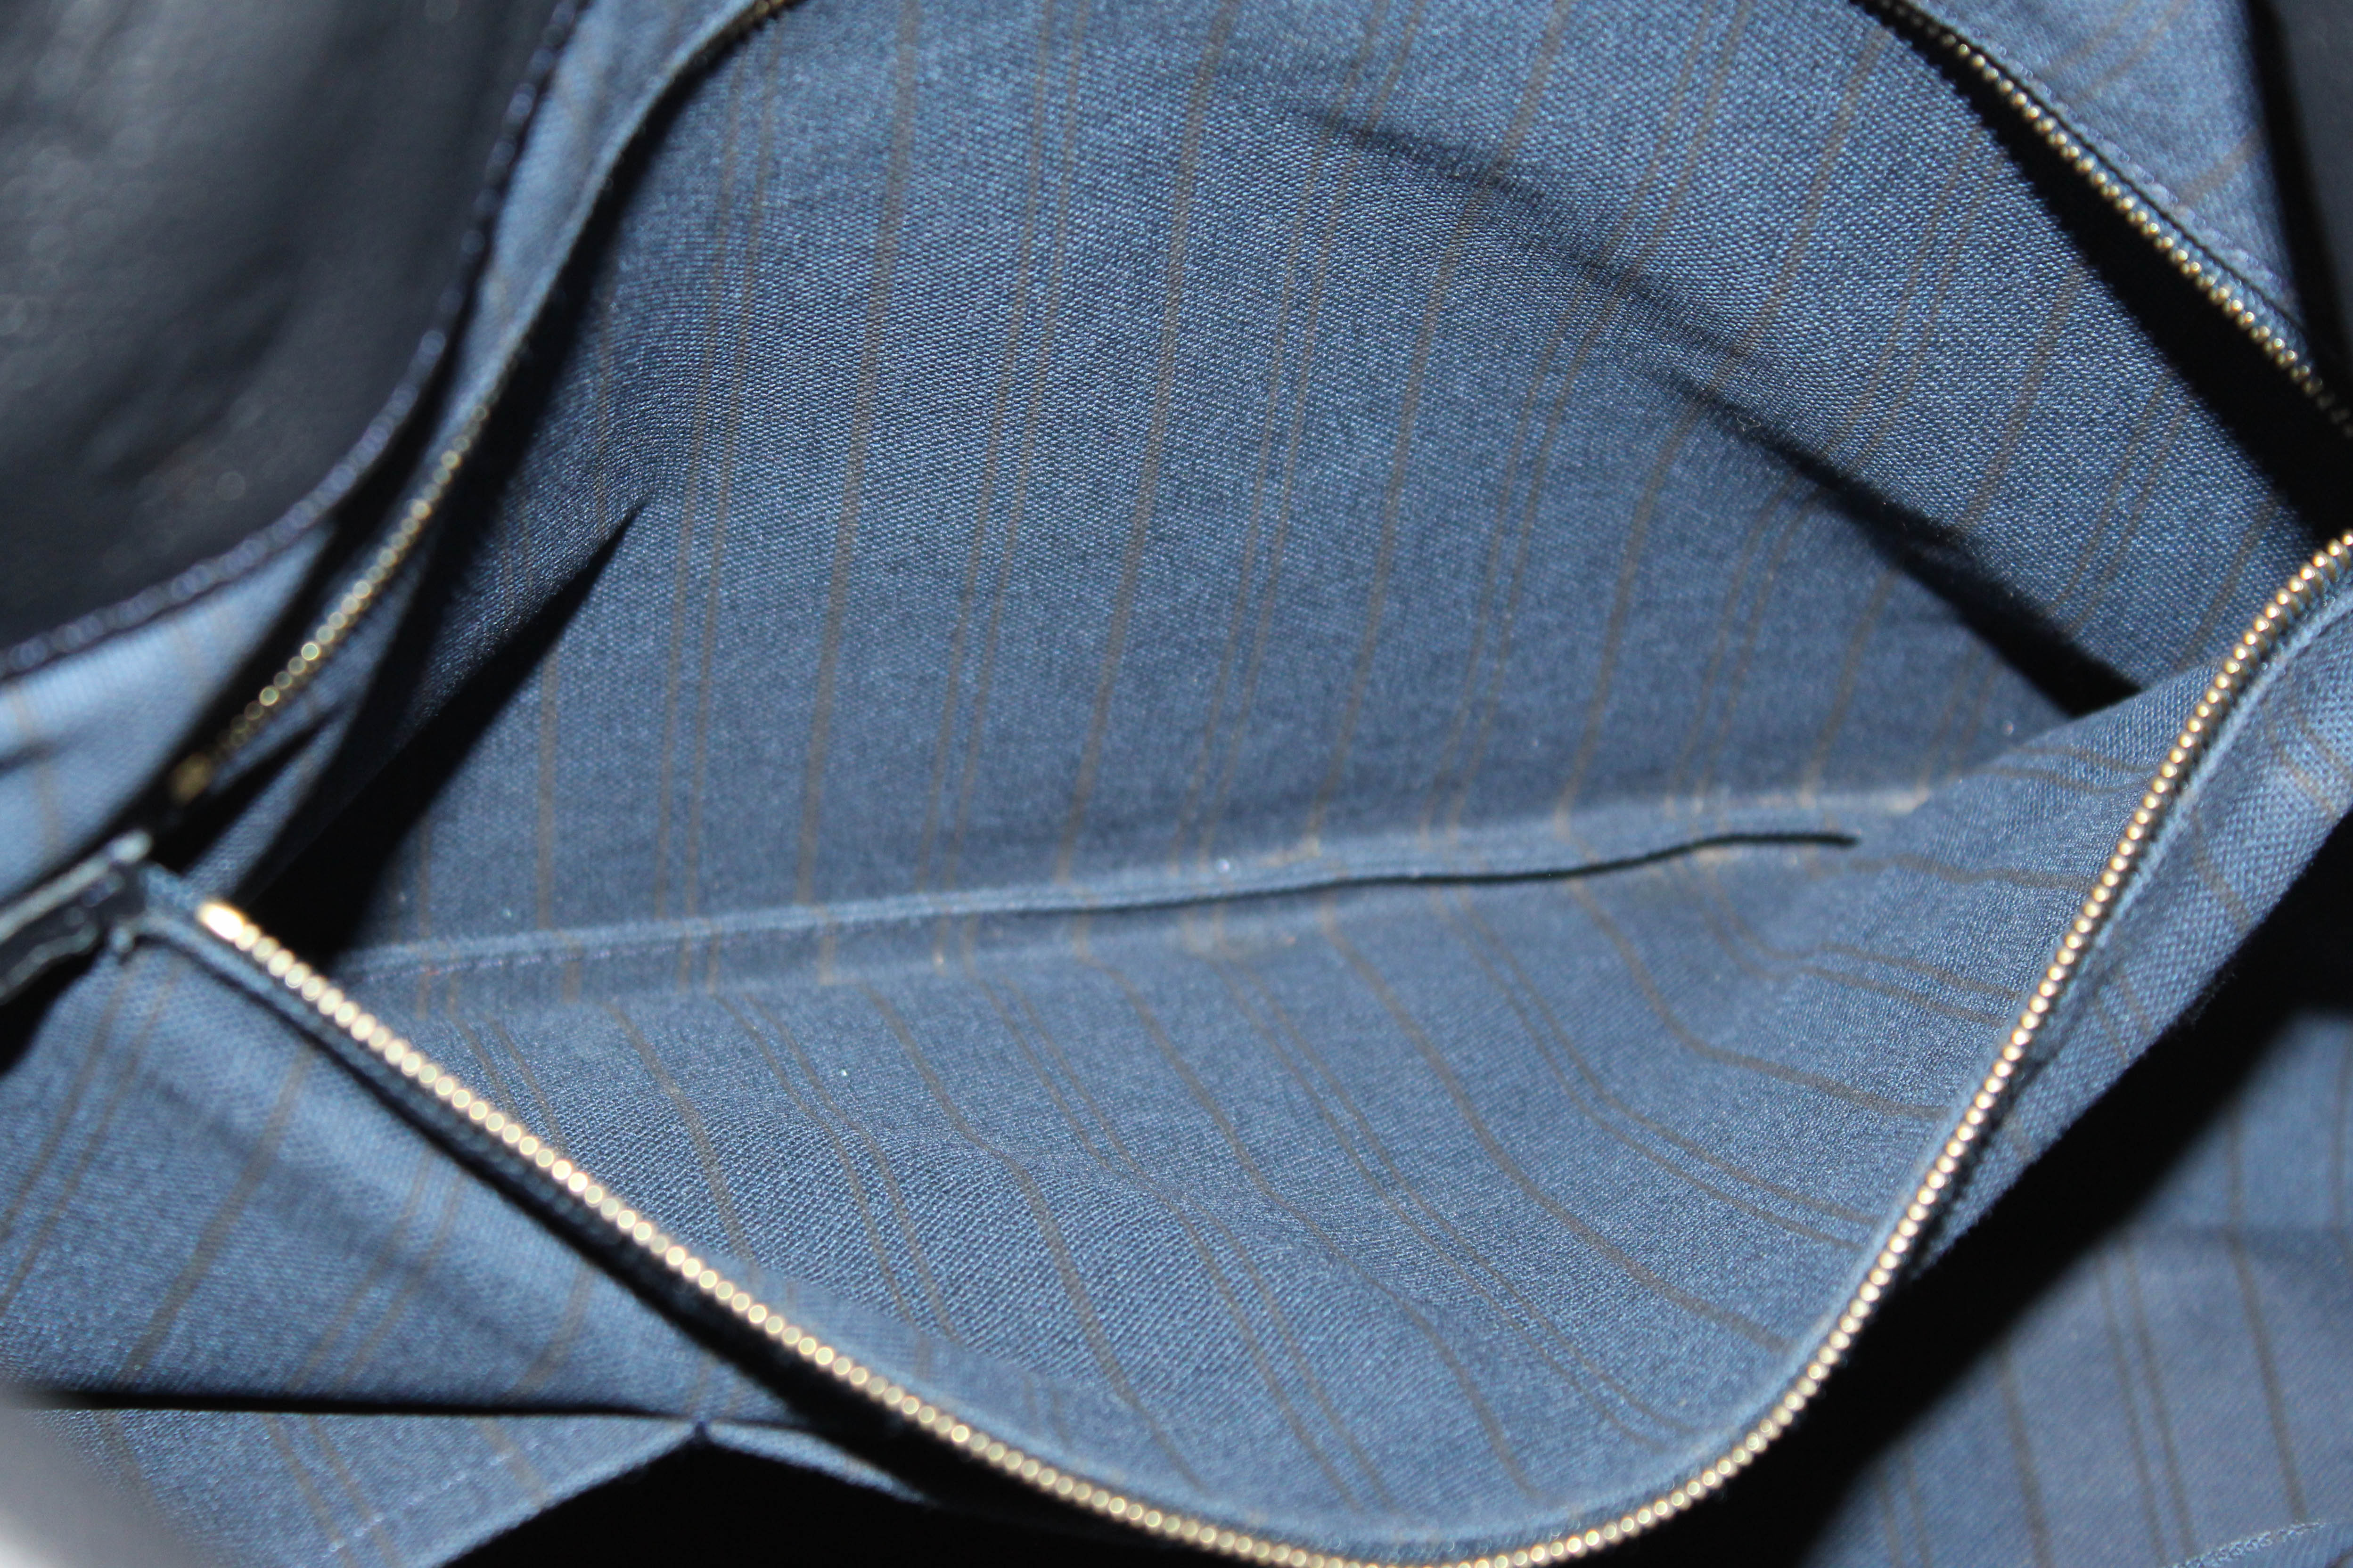 Authentic Louis Vuitton Blue Empreinte Leather Artsy MM Hobo Bag